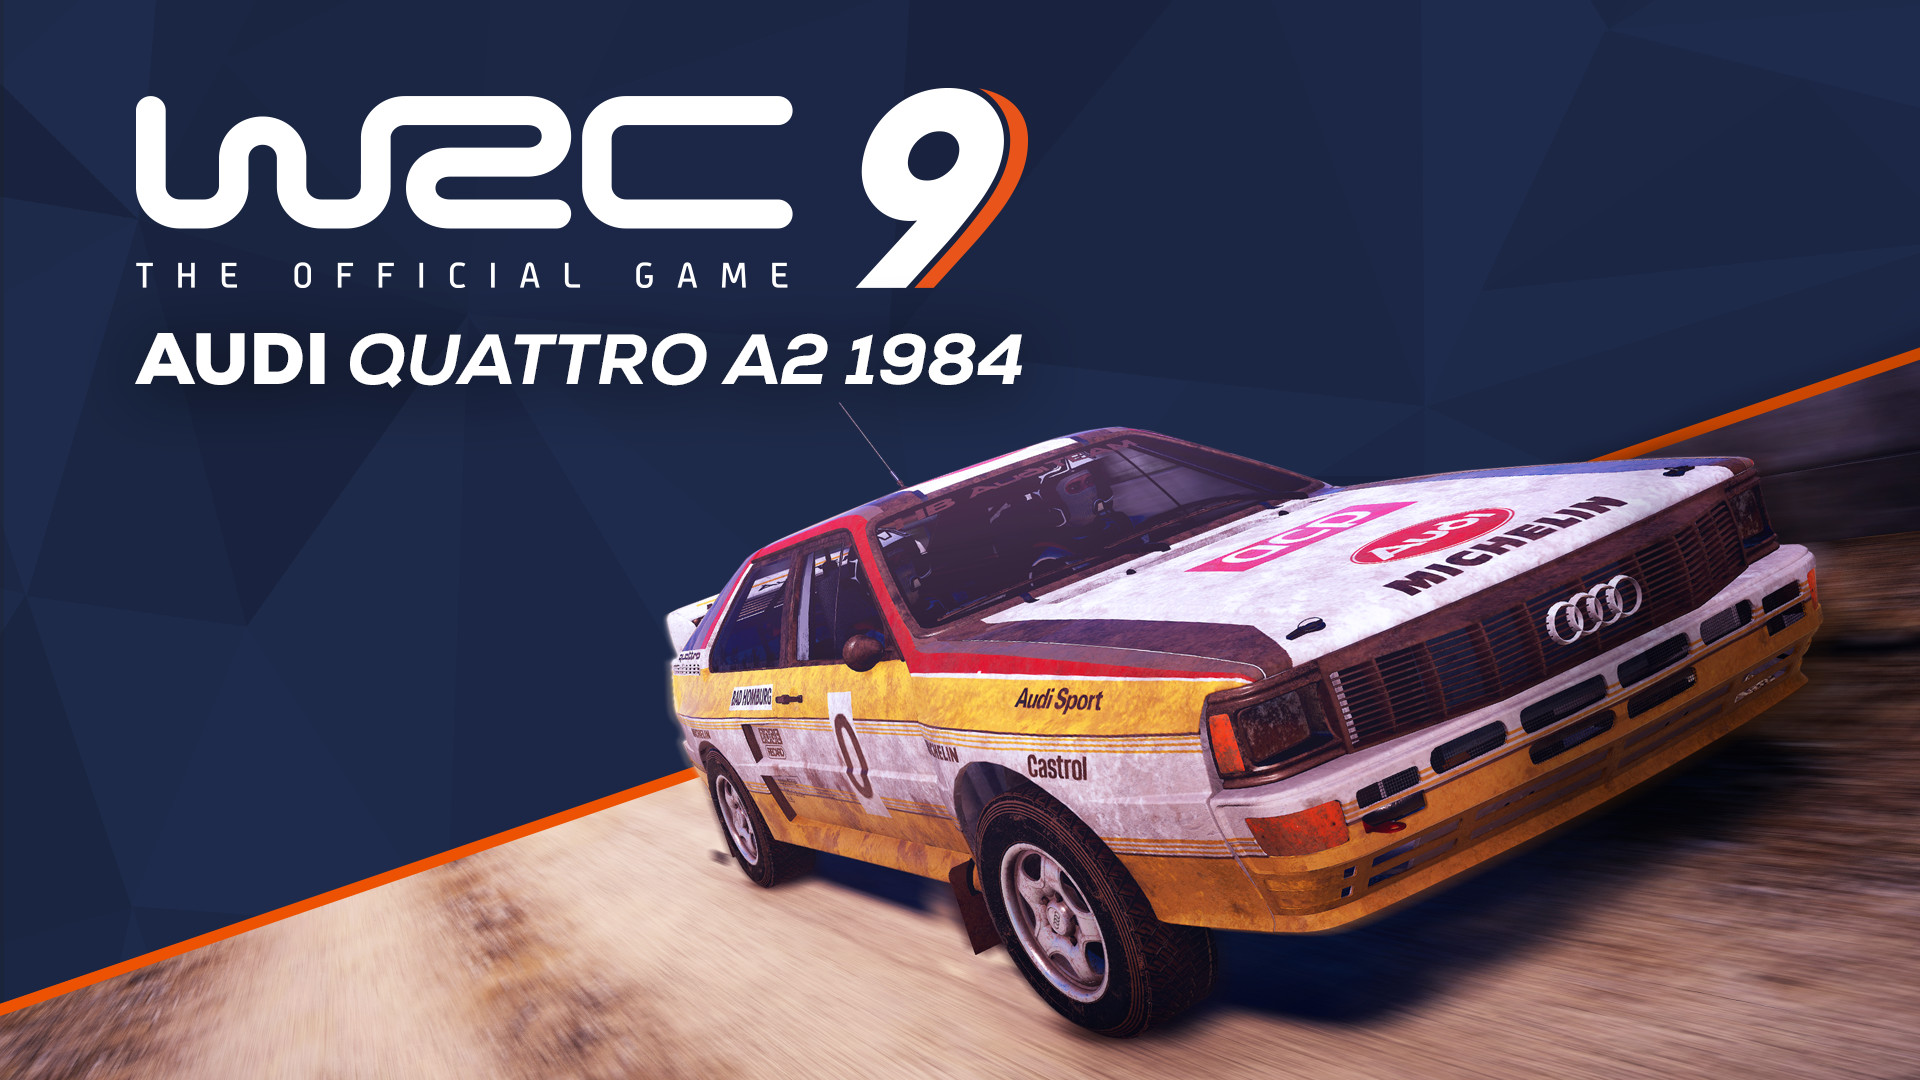 [$ 1.83] WRC 9 - Audi Quattro A2 1984 DLC Steam CD Key